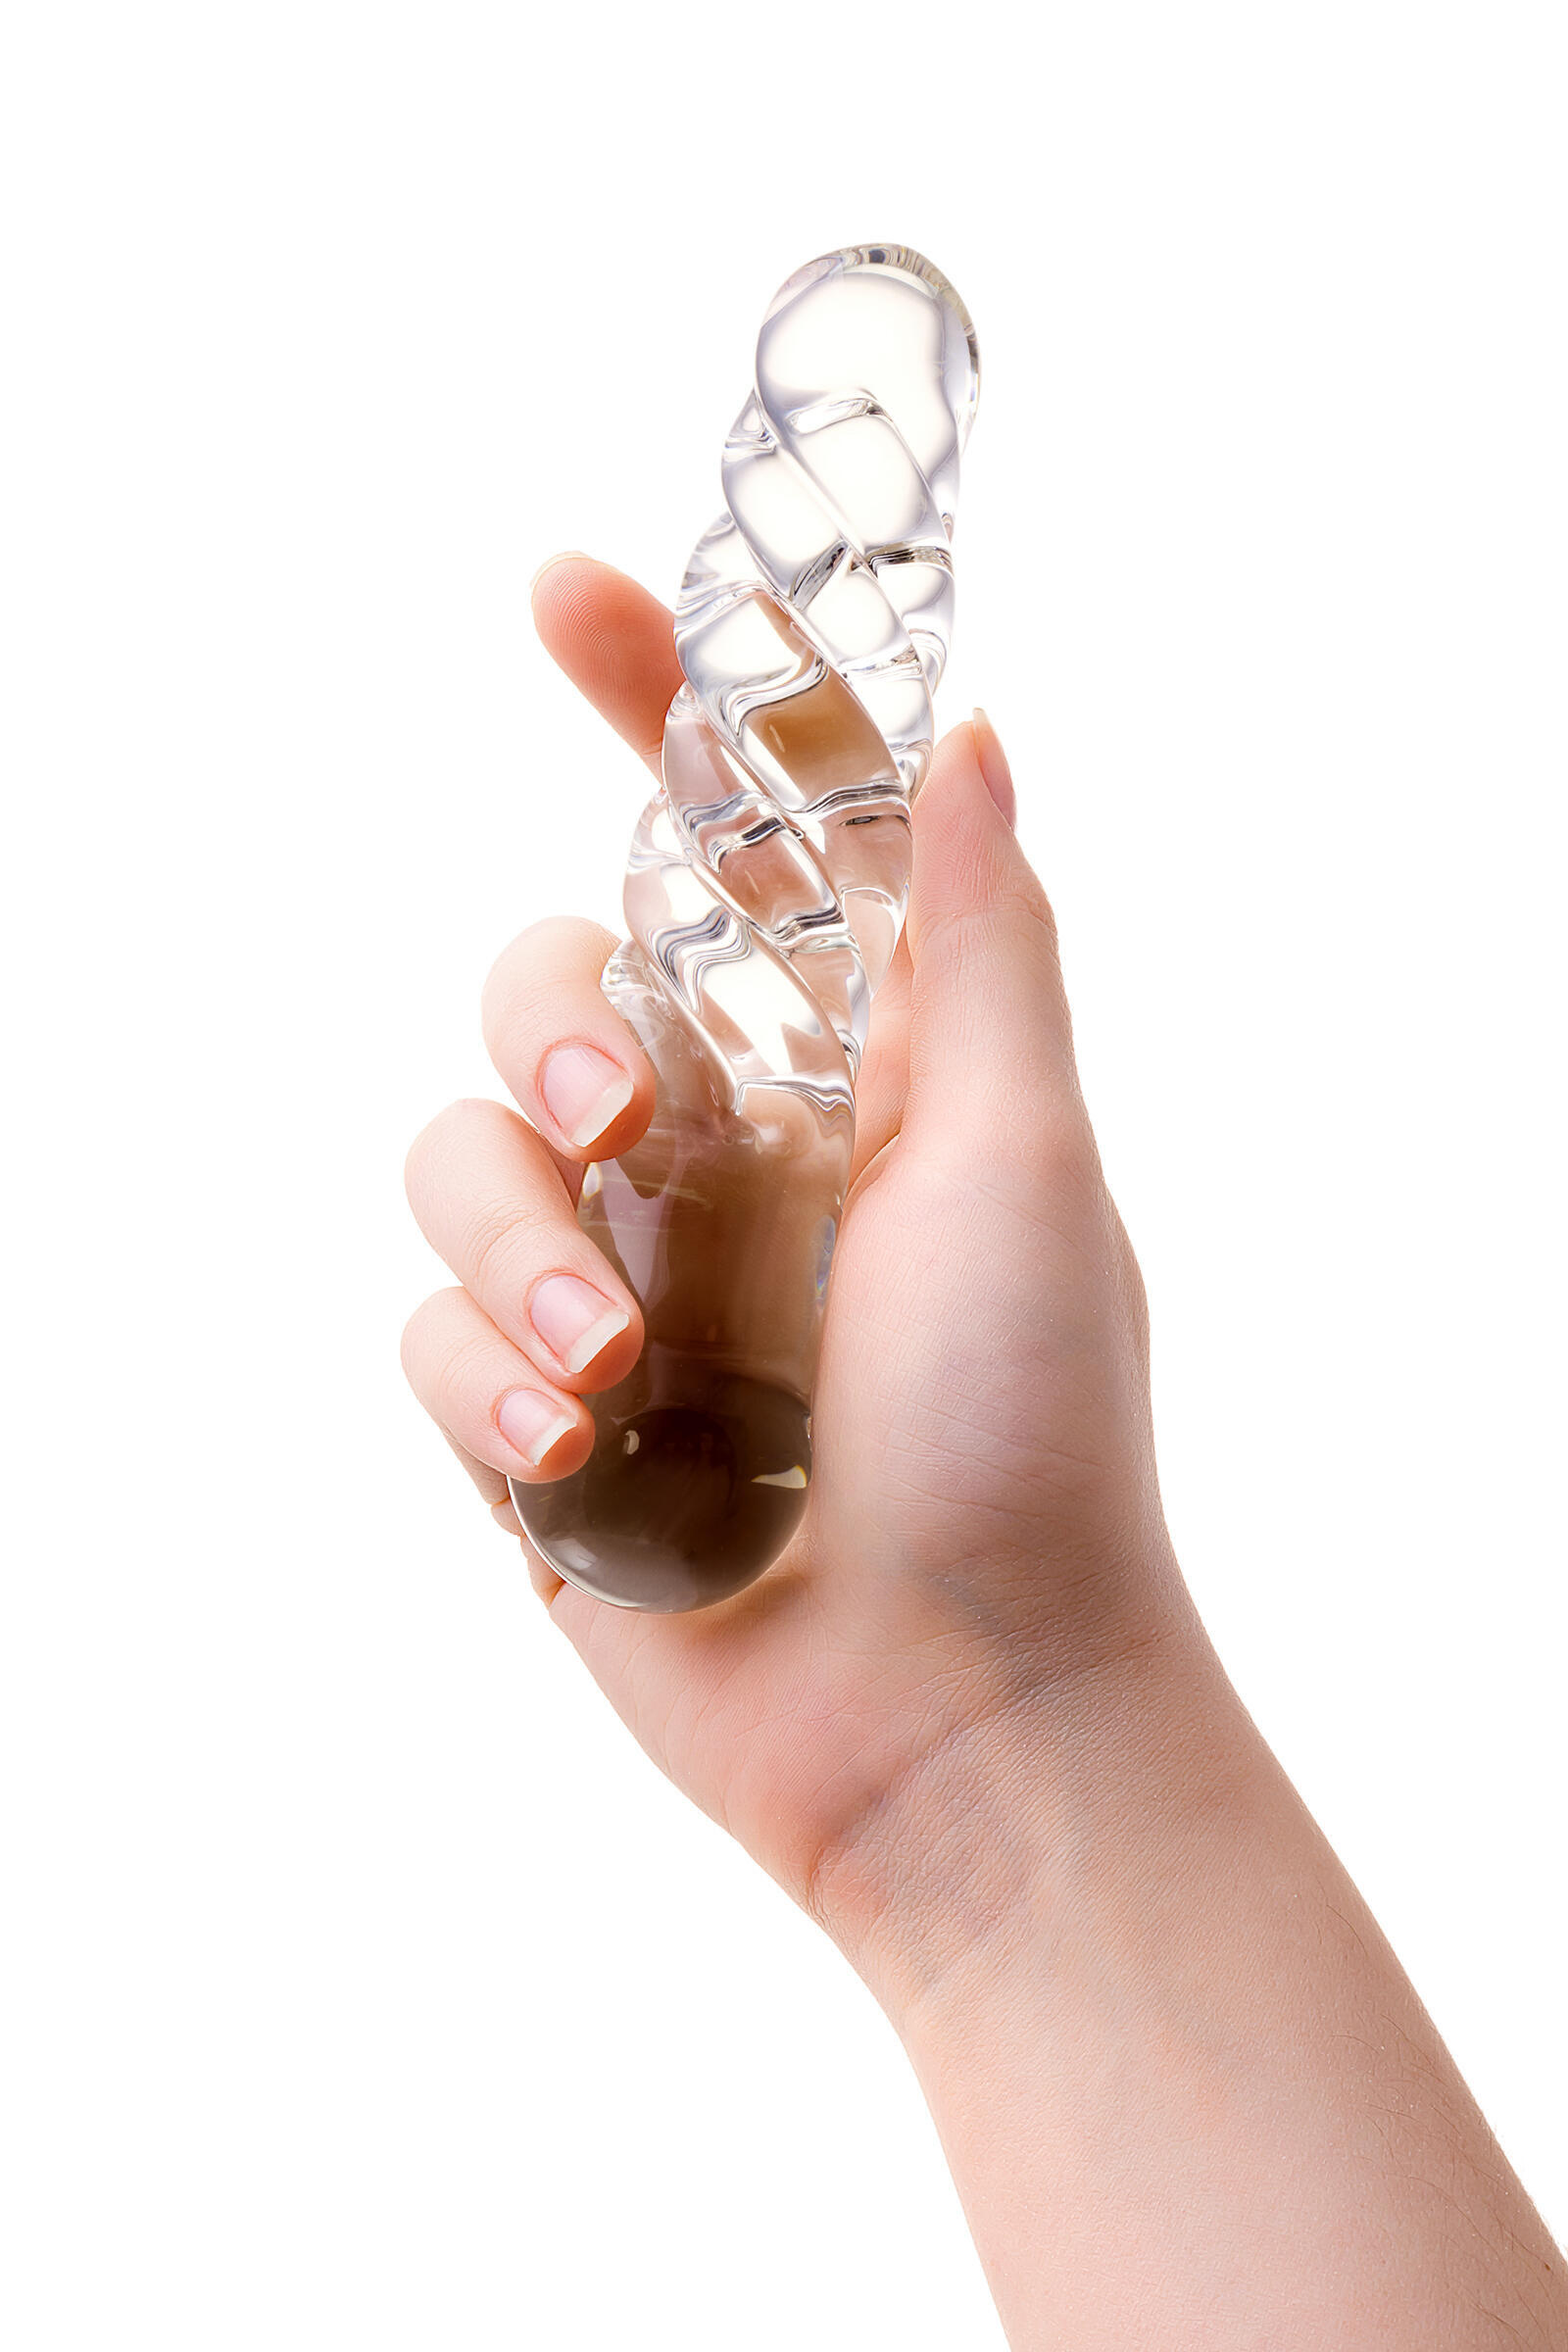 Фаллоимитатор Sexus Glass двусторонний, бесцветный, 16 см